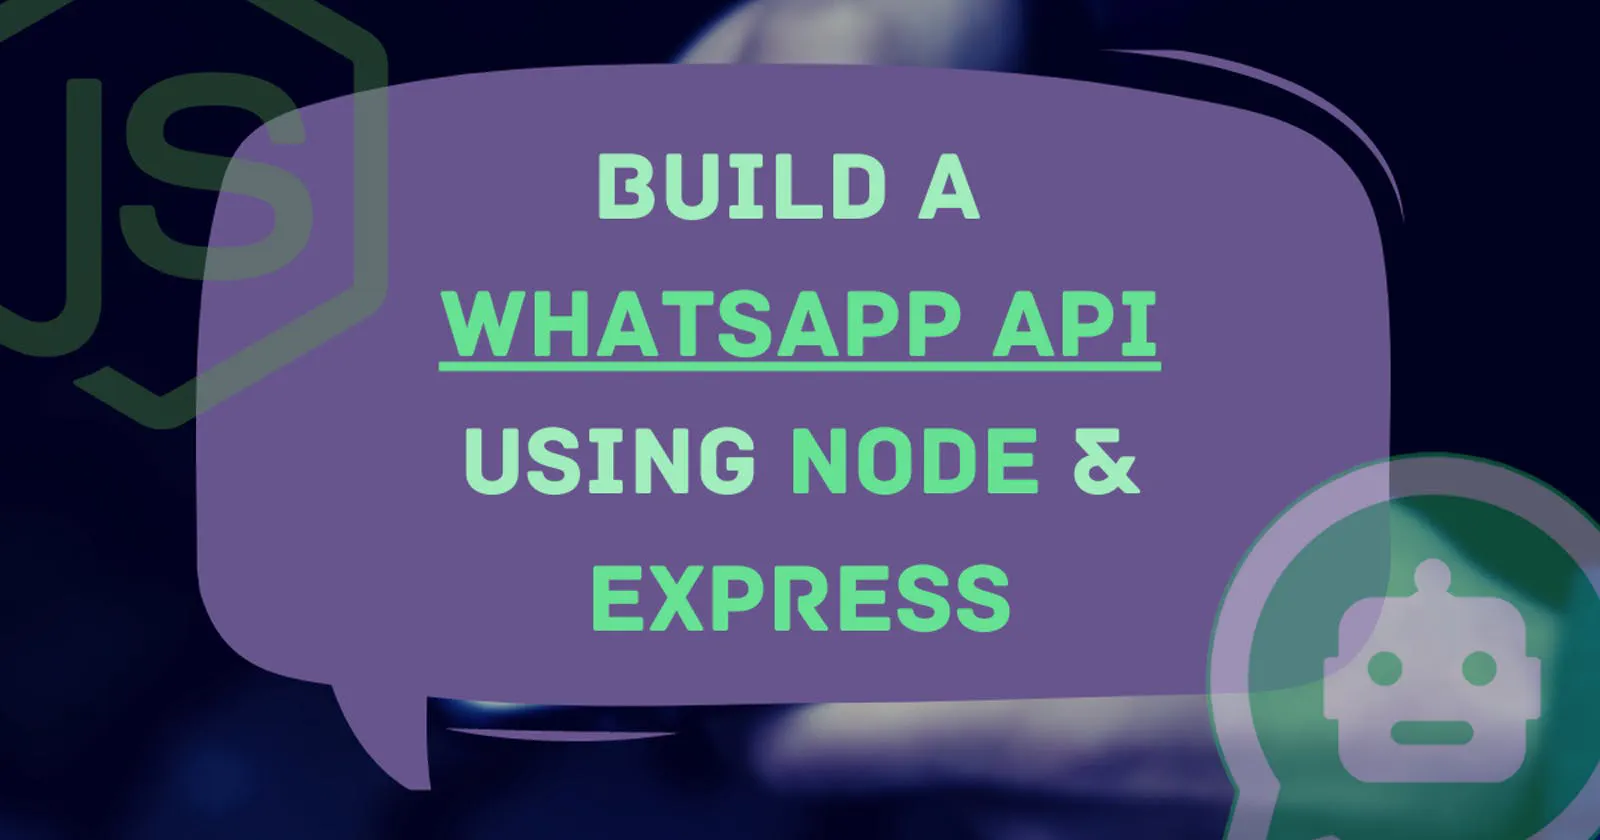 Building a WhatsApp API using Node.js & Express